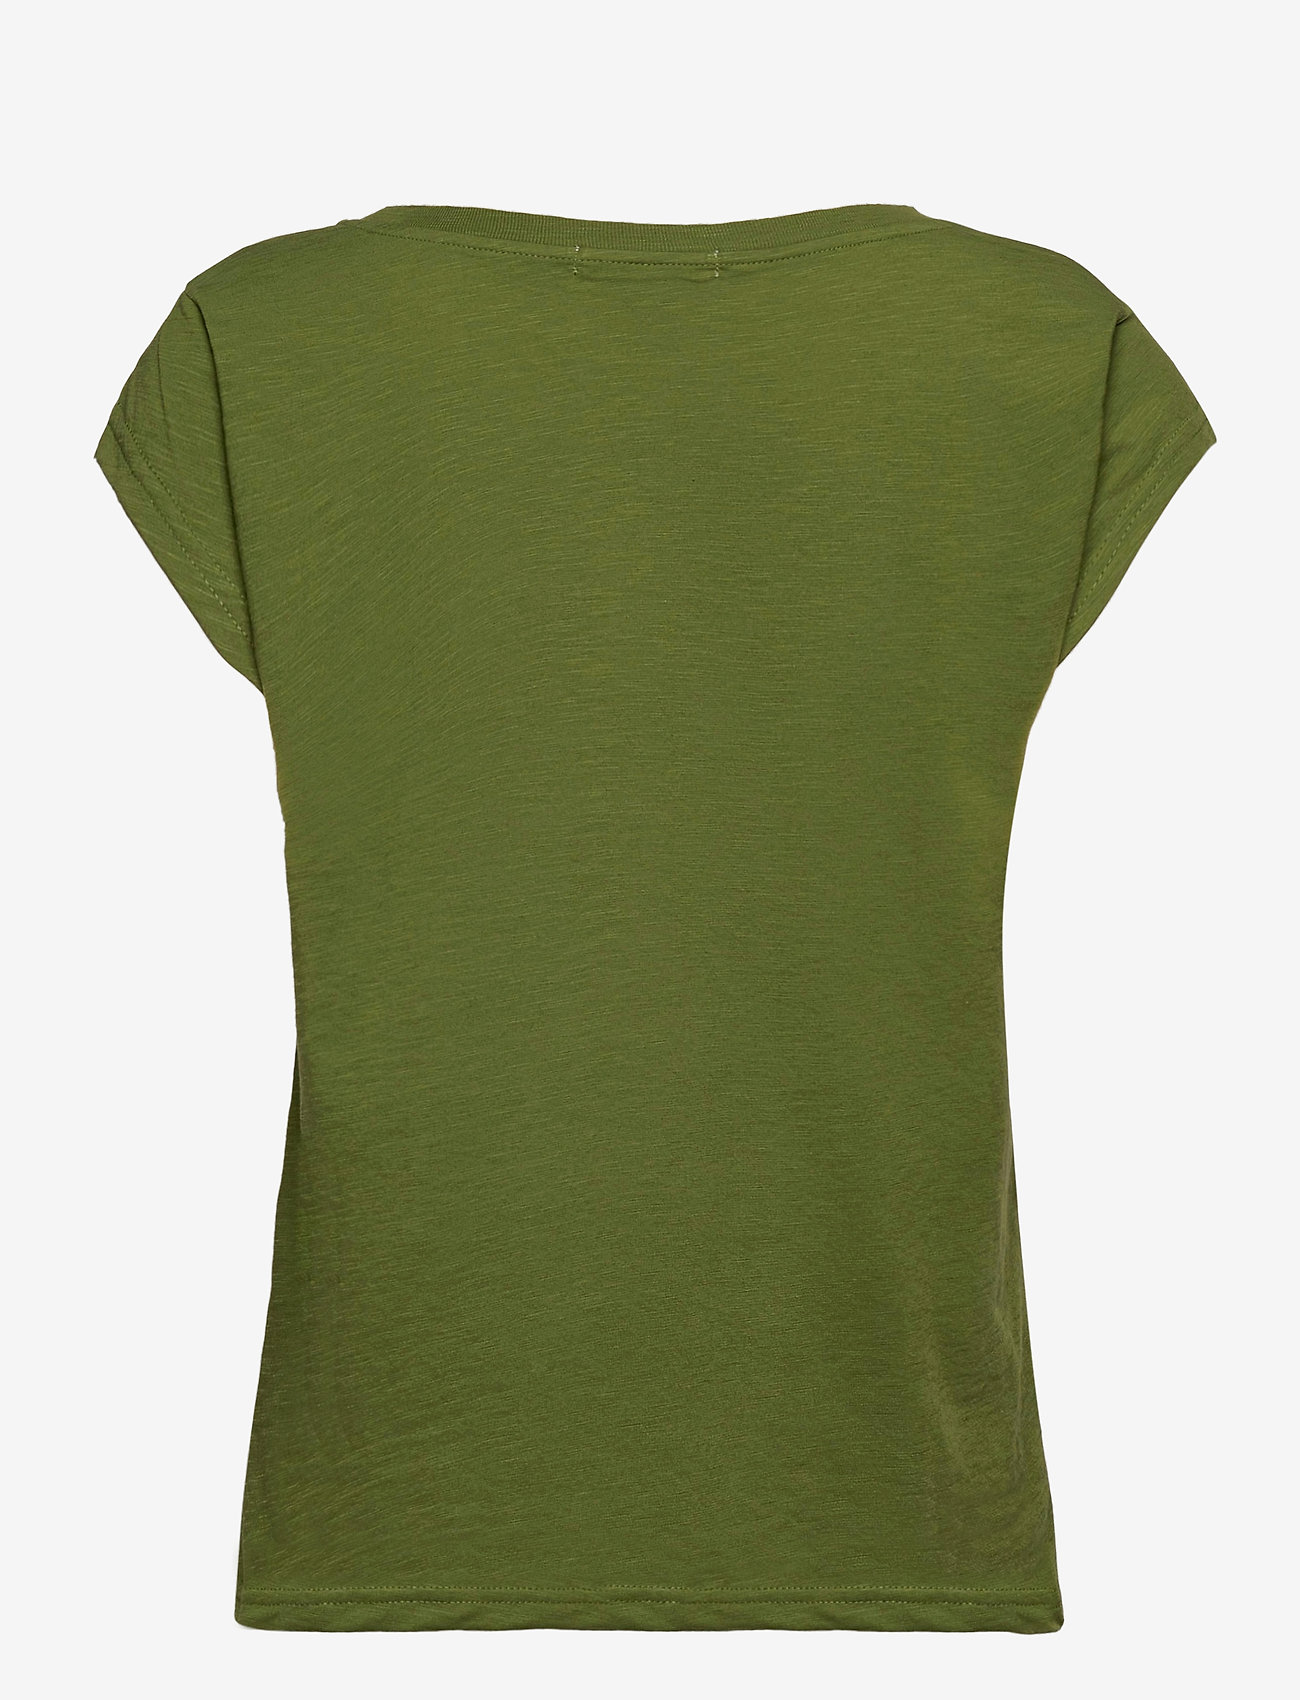 Coster Copenhagen - T-shirt w. tarot print - t-skjorter - forest green - 1